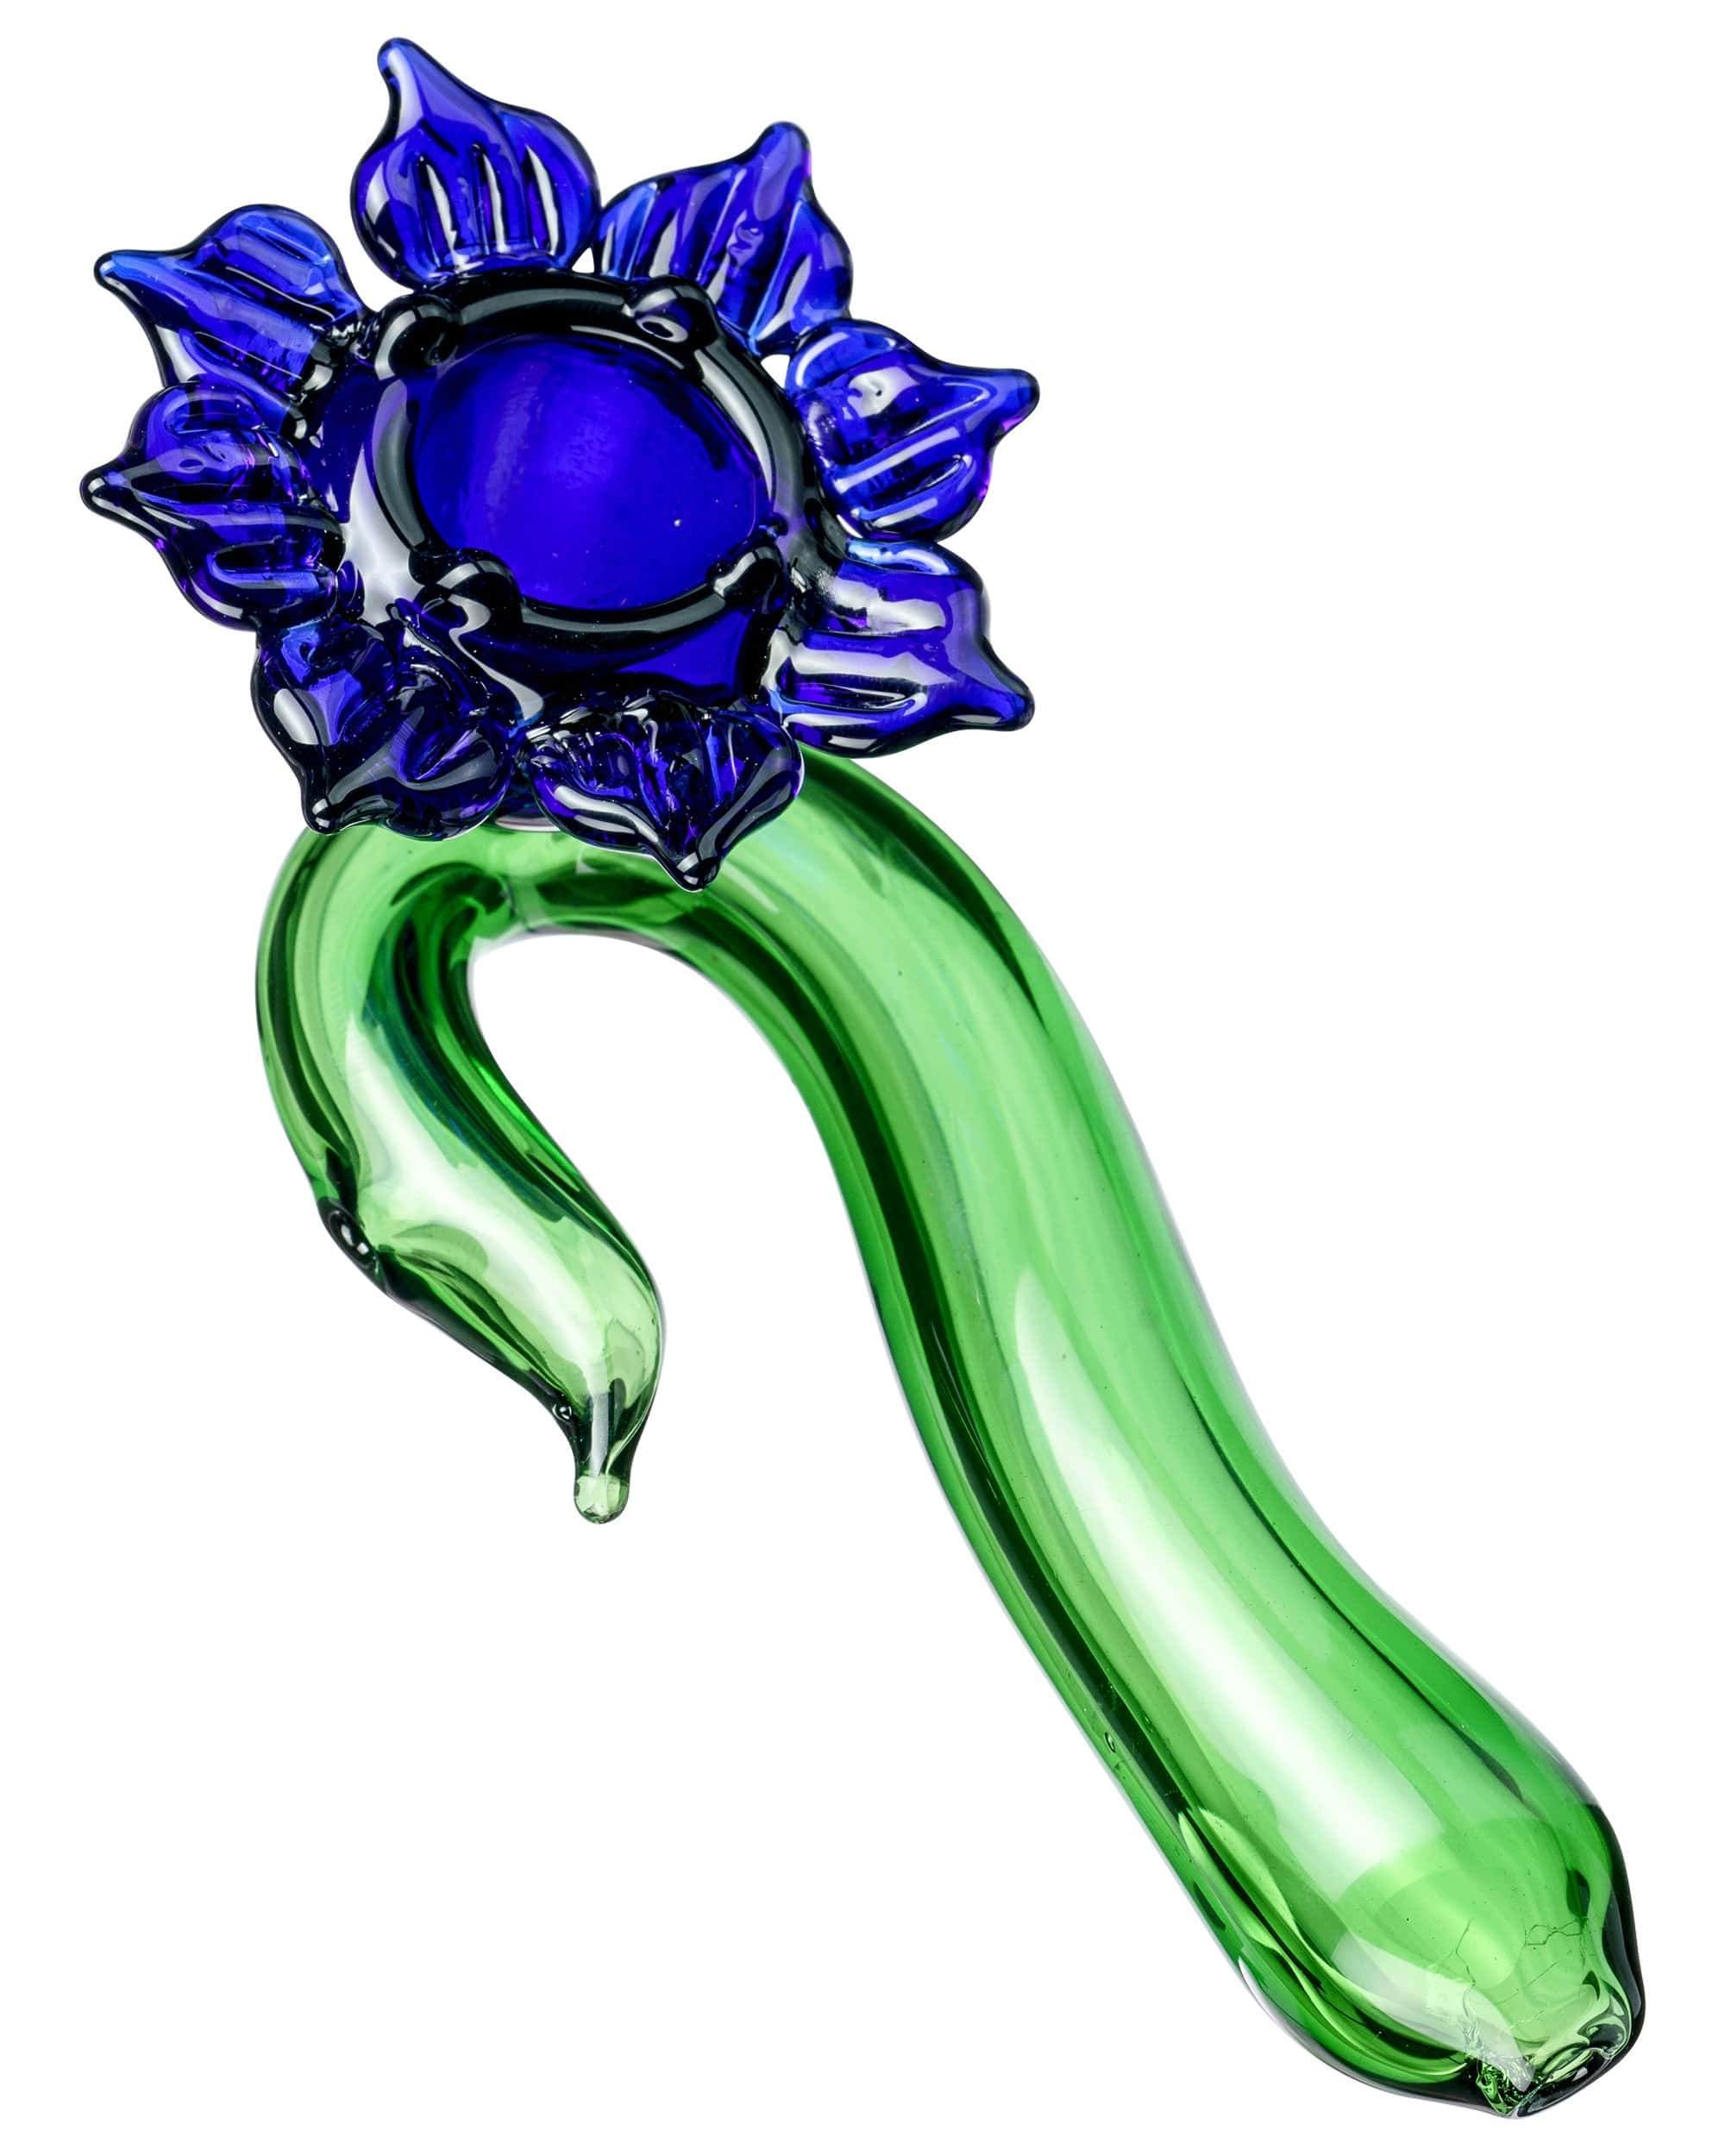 Violet Flower Spoon Pipe